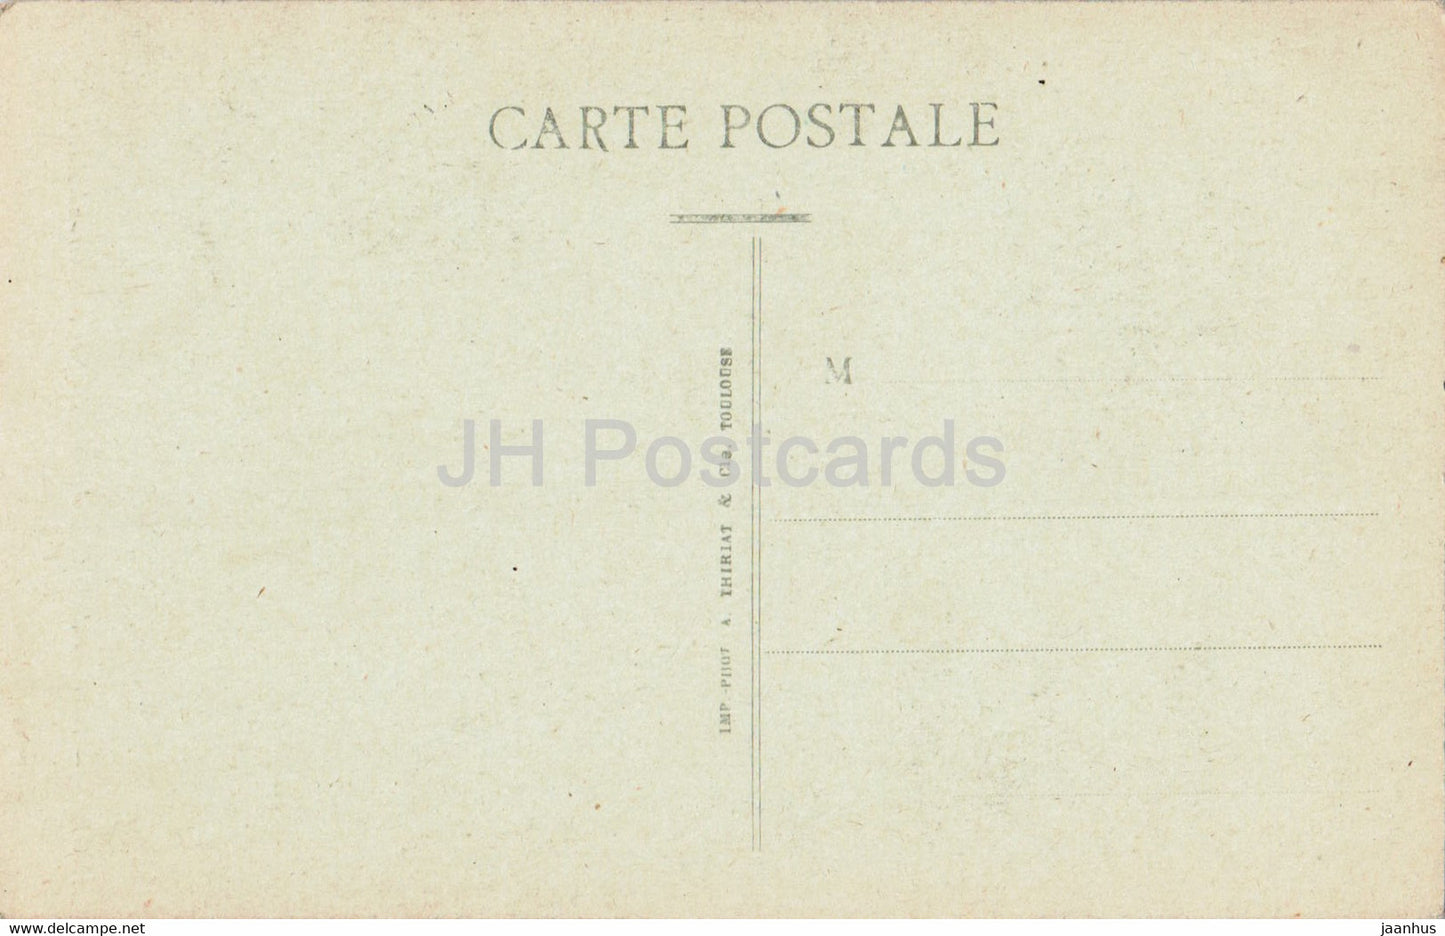 Angers - Interieur de la Cathedrale - La Nef et le Grand Autel - alte Postkarte - Frankreich - unbenutzt